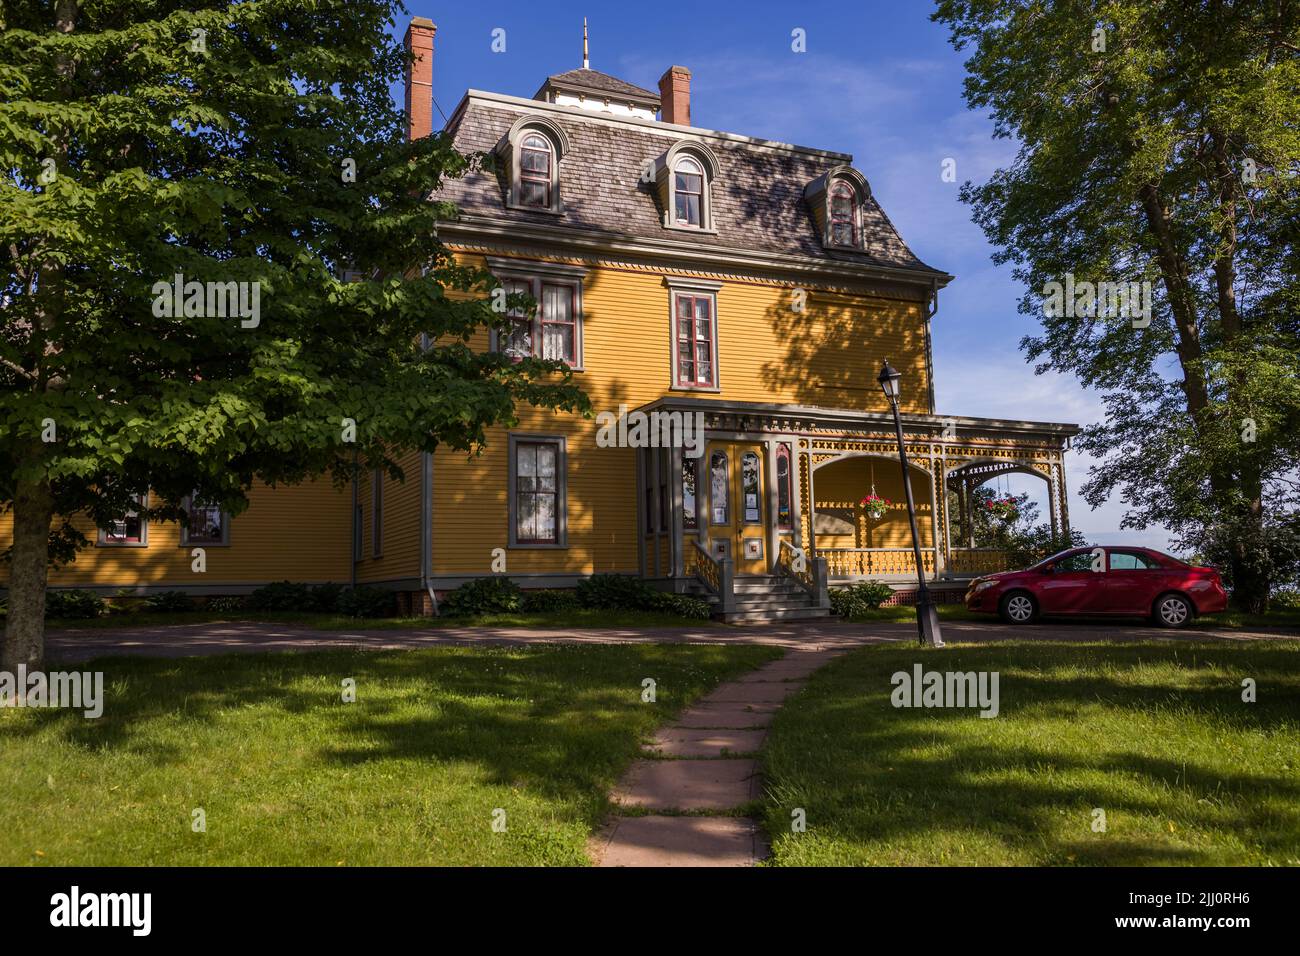 Maison historique Braconsfield - Charlottetown, Île-du-Prince-Édouard, Canada - maison victorienne en bois avec patio Banque D'Images